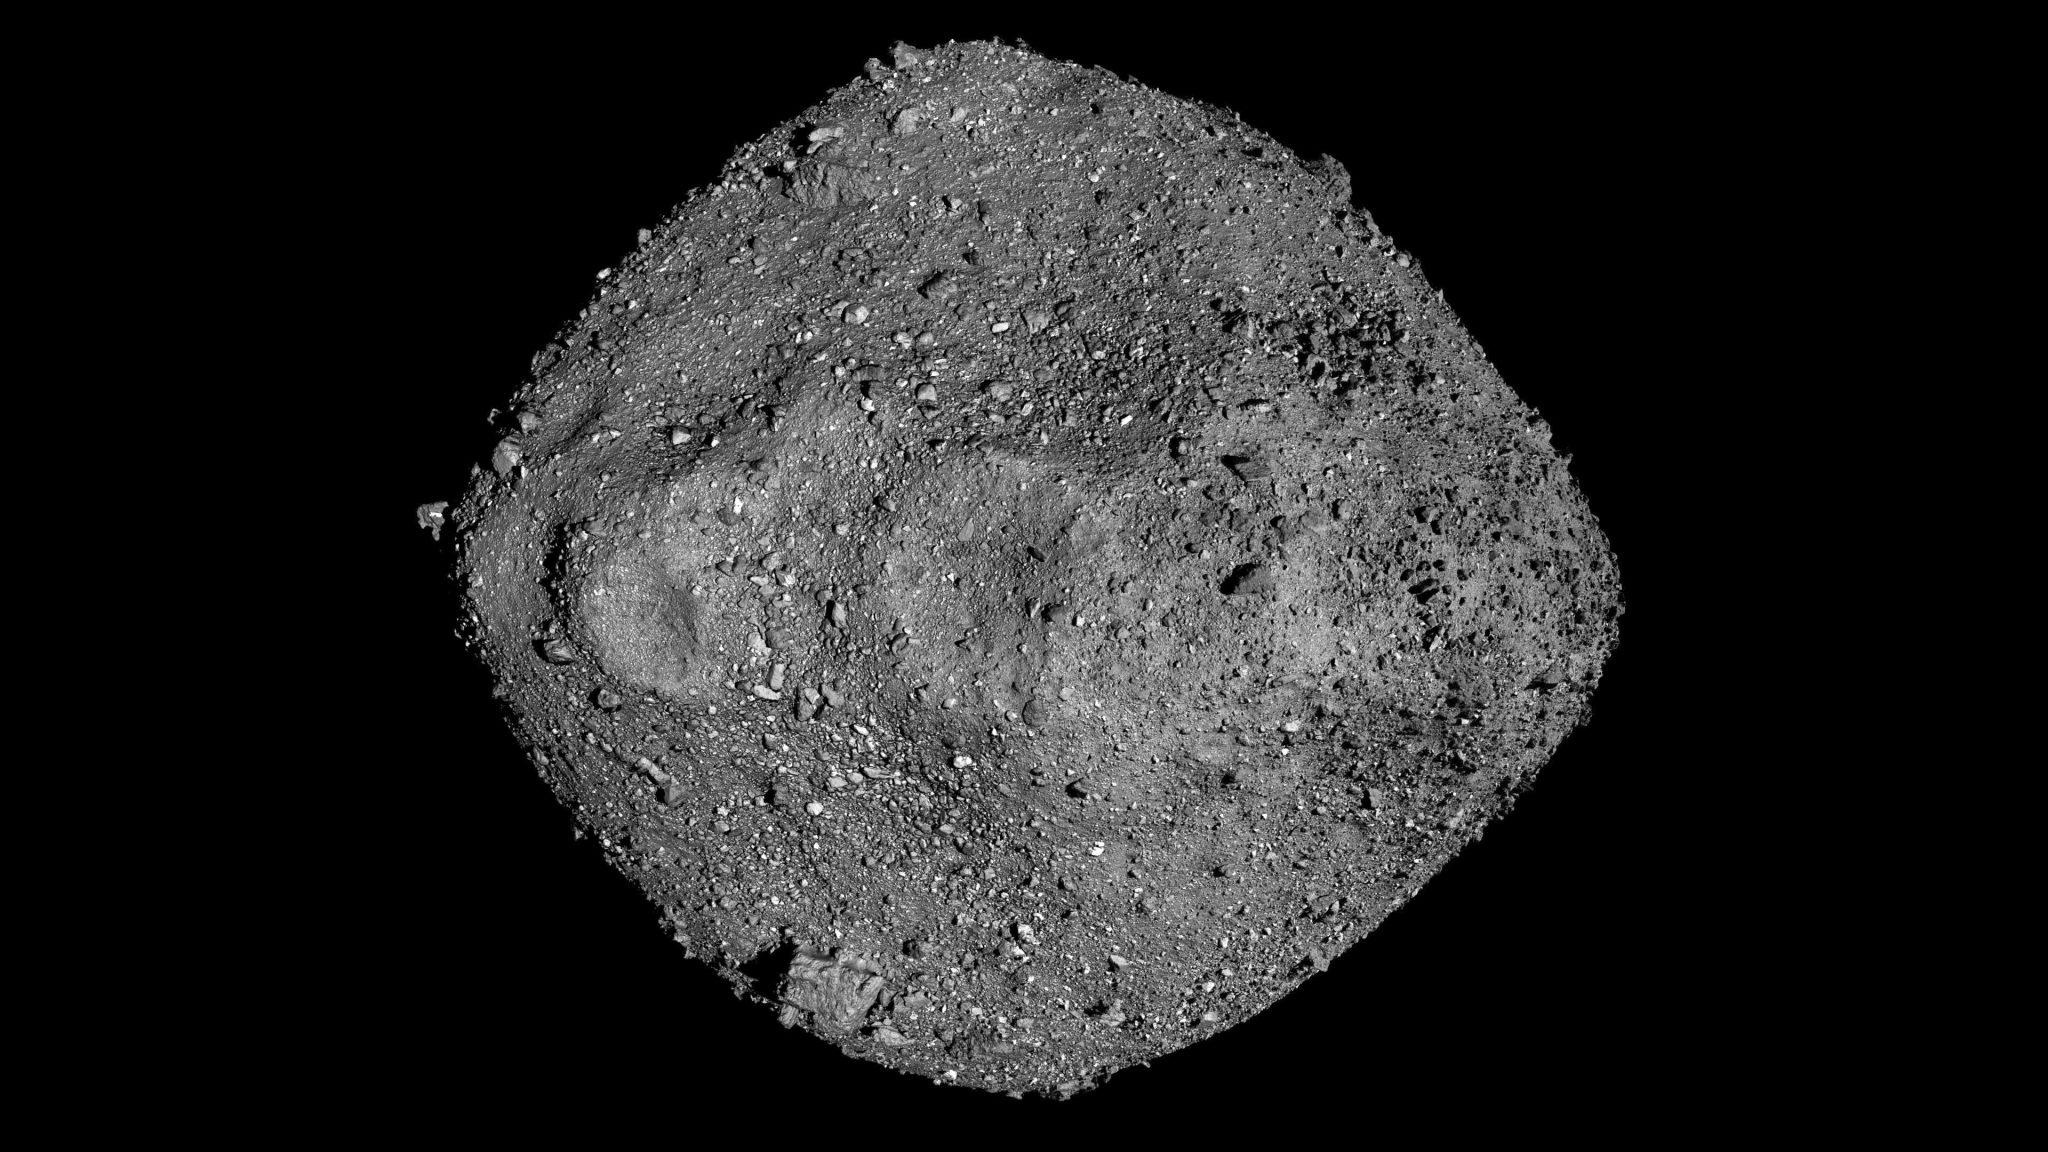 Asteroid Bennu Mosaic OSIRIS-REx